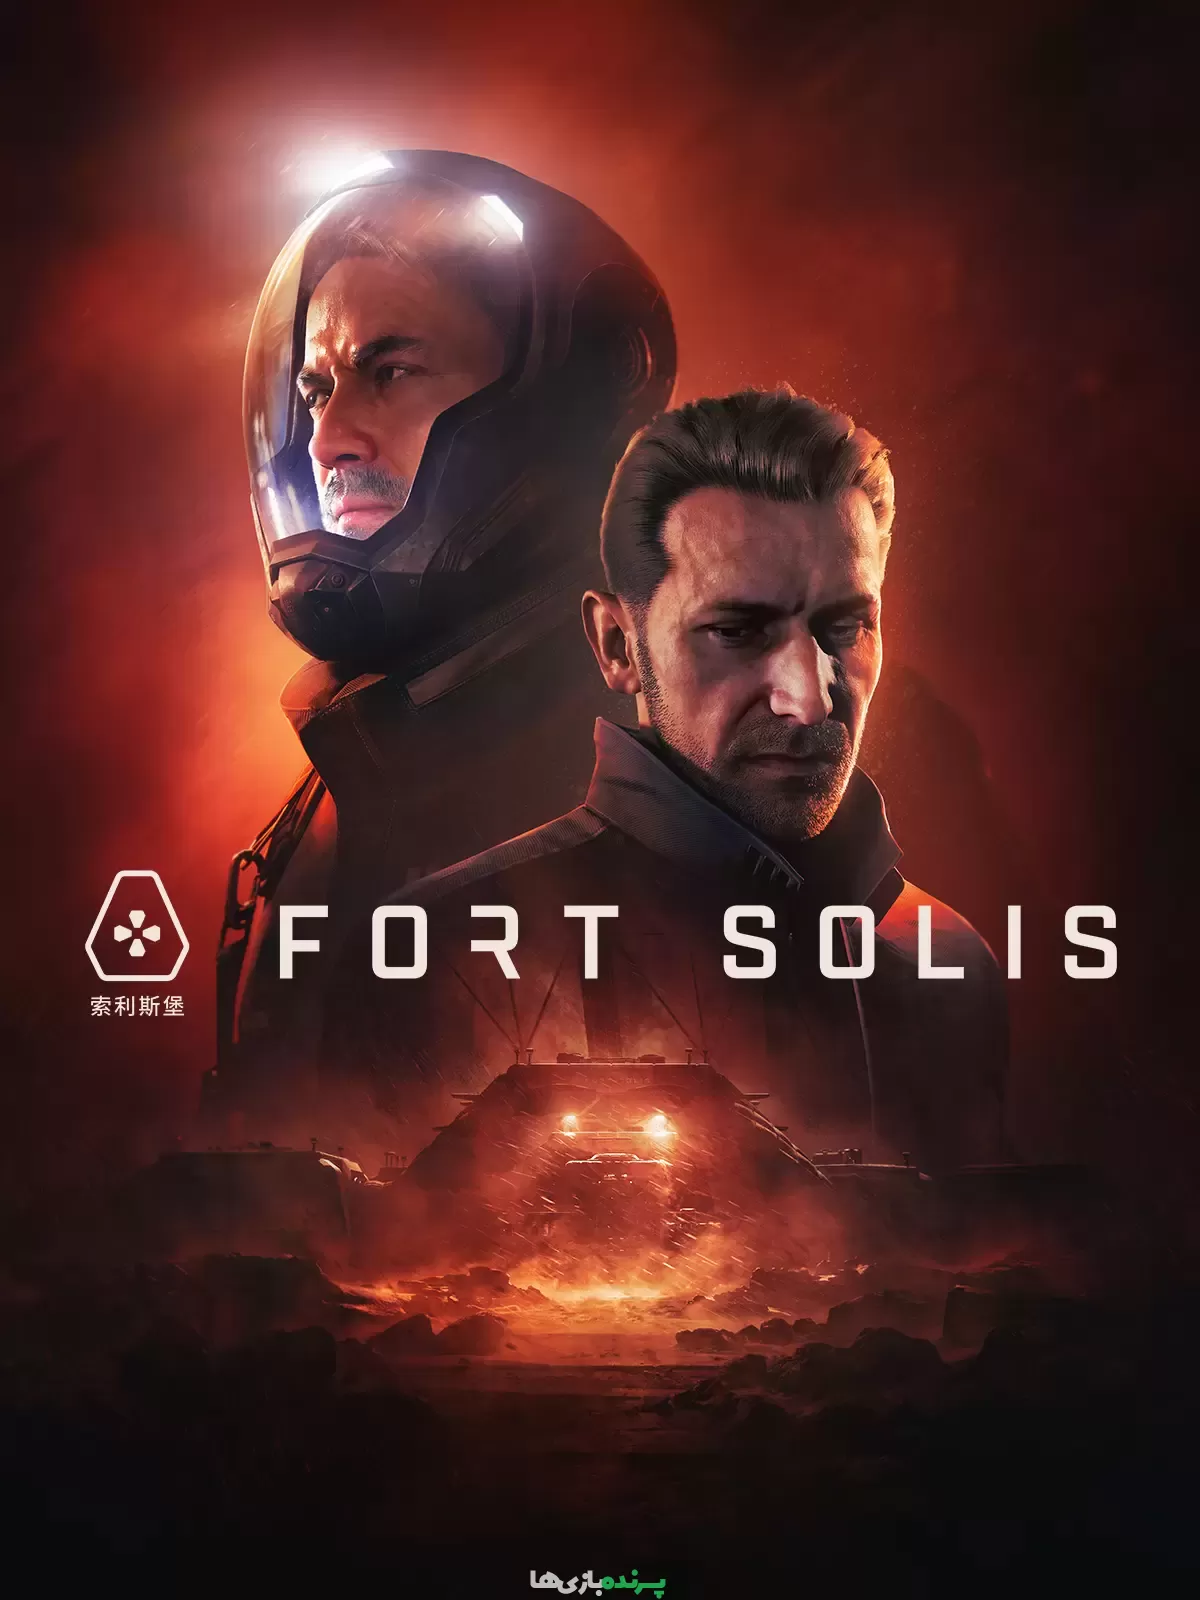 دانلود بازی Fort Solis برای کامپیوتر – نسخه فشرده FitGirl